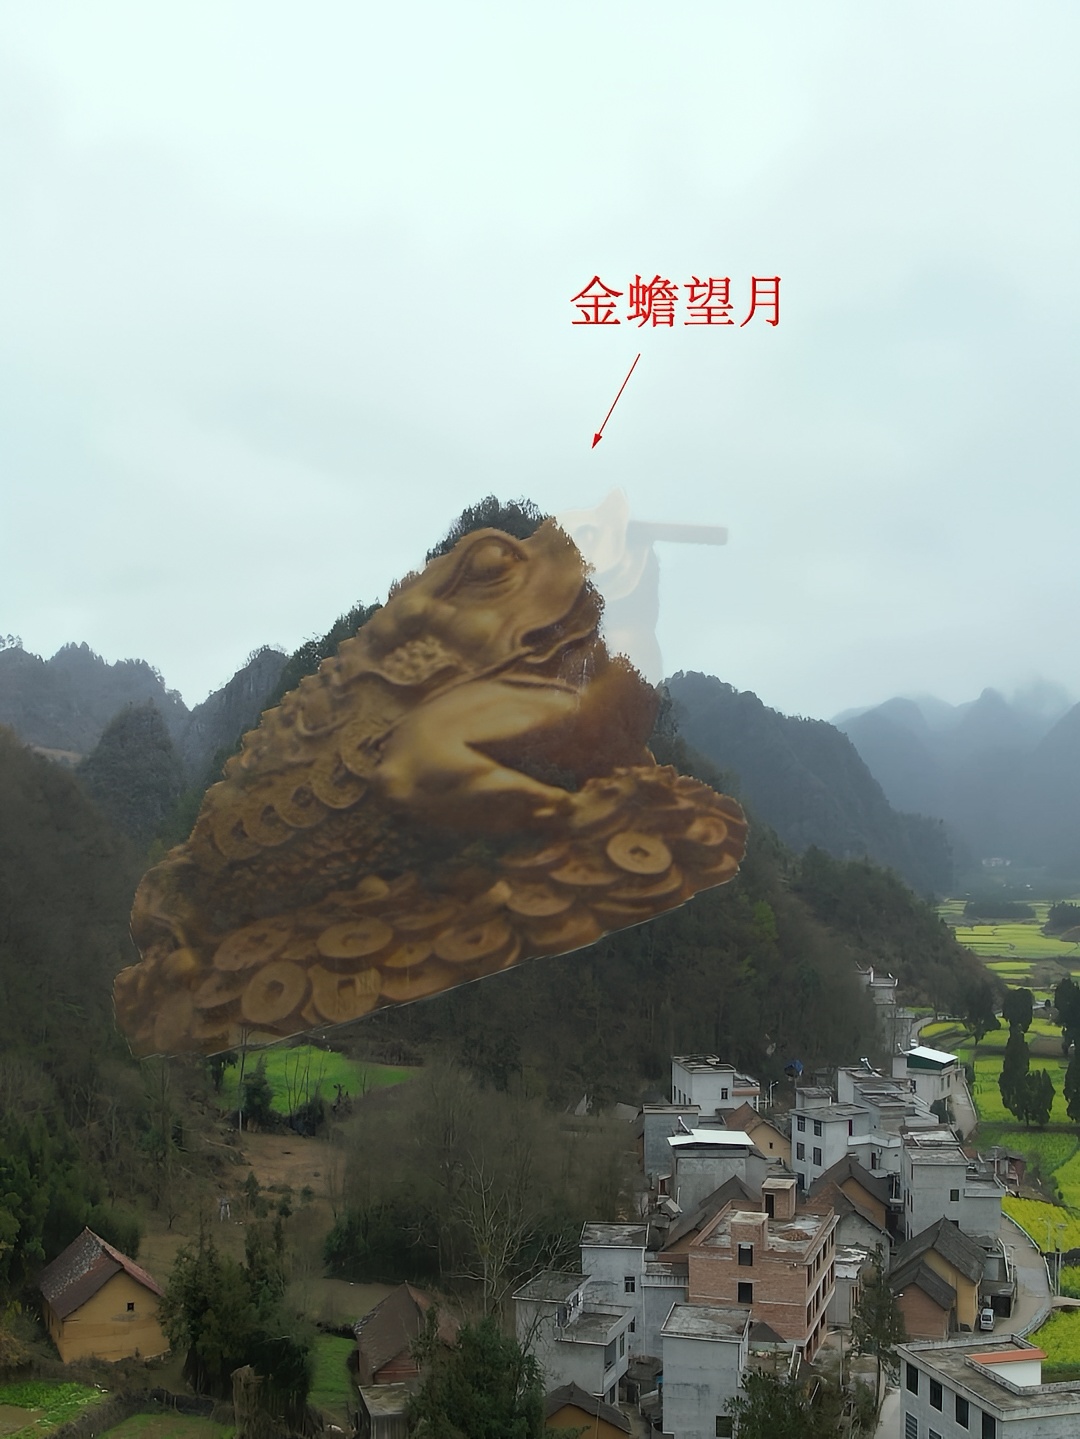 在贵州发现一座奇山，形似一个蟾蜍，脚下就是一个村庄，实在太漂亮了！ #自然奇观 #旅行大玩家